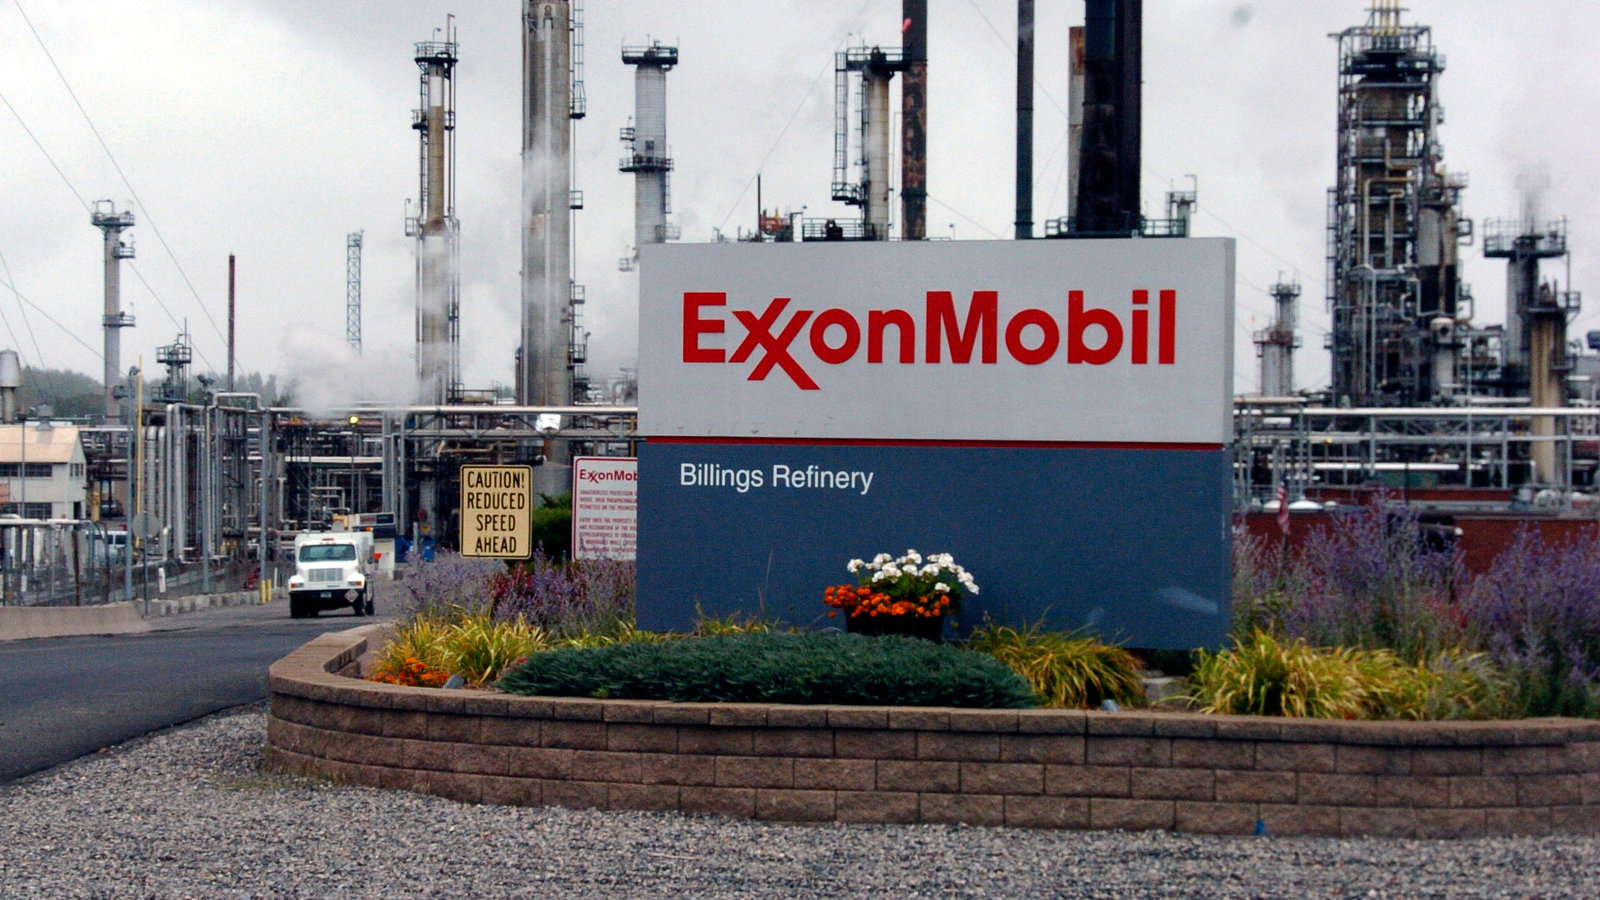 مصفاة بيلينغز لتكرير النفط التابعة لشركة إكسون موبيل